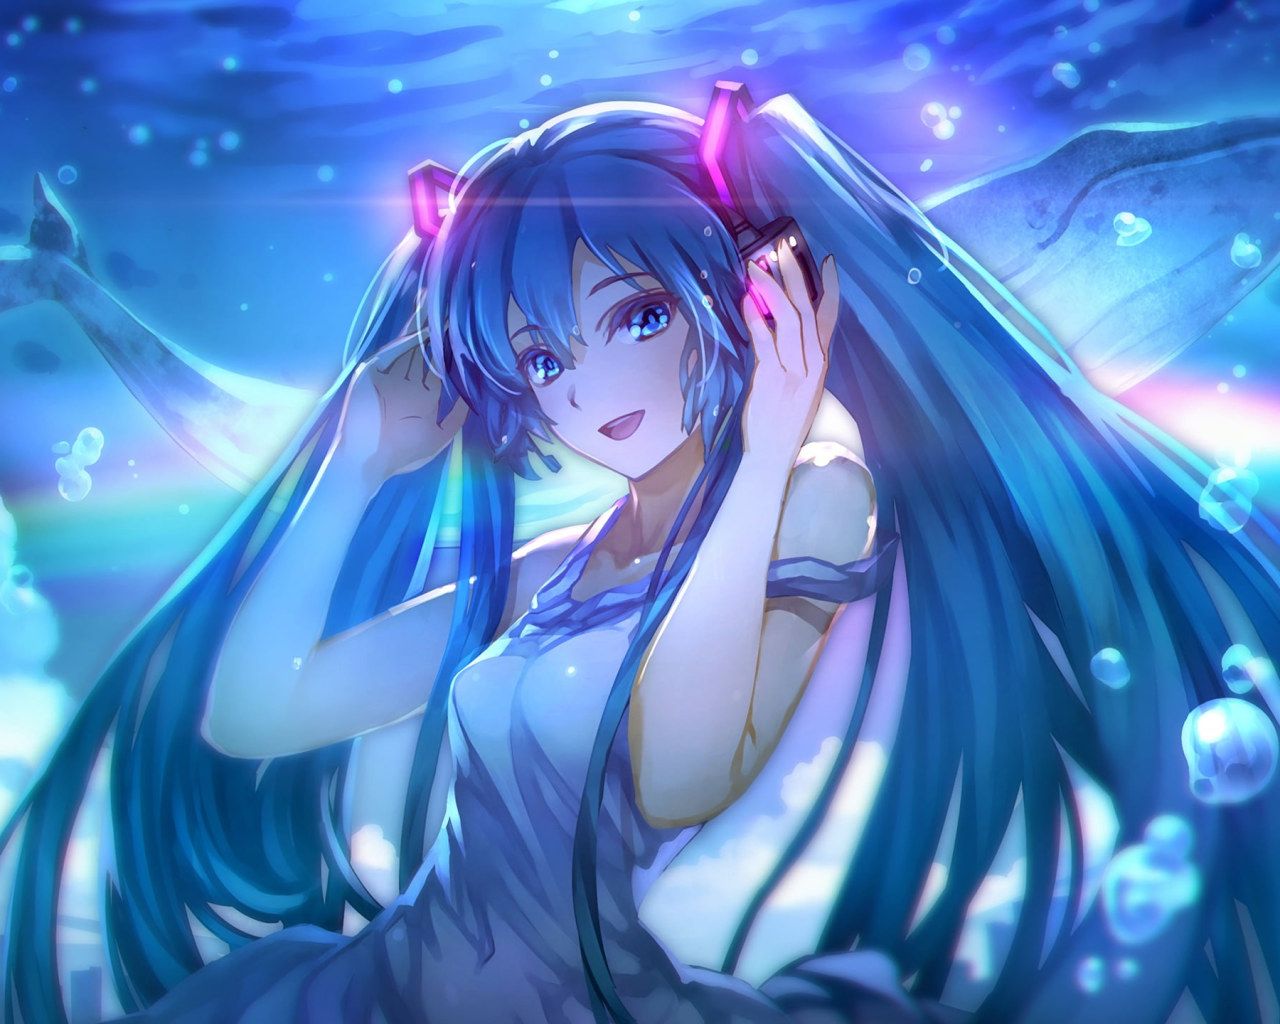 Blue Haired Female Anime Character Digital Wallpaper, Anime Girls • Wallpaper For You HD Wallpaper For Desktop & Mobile